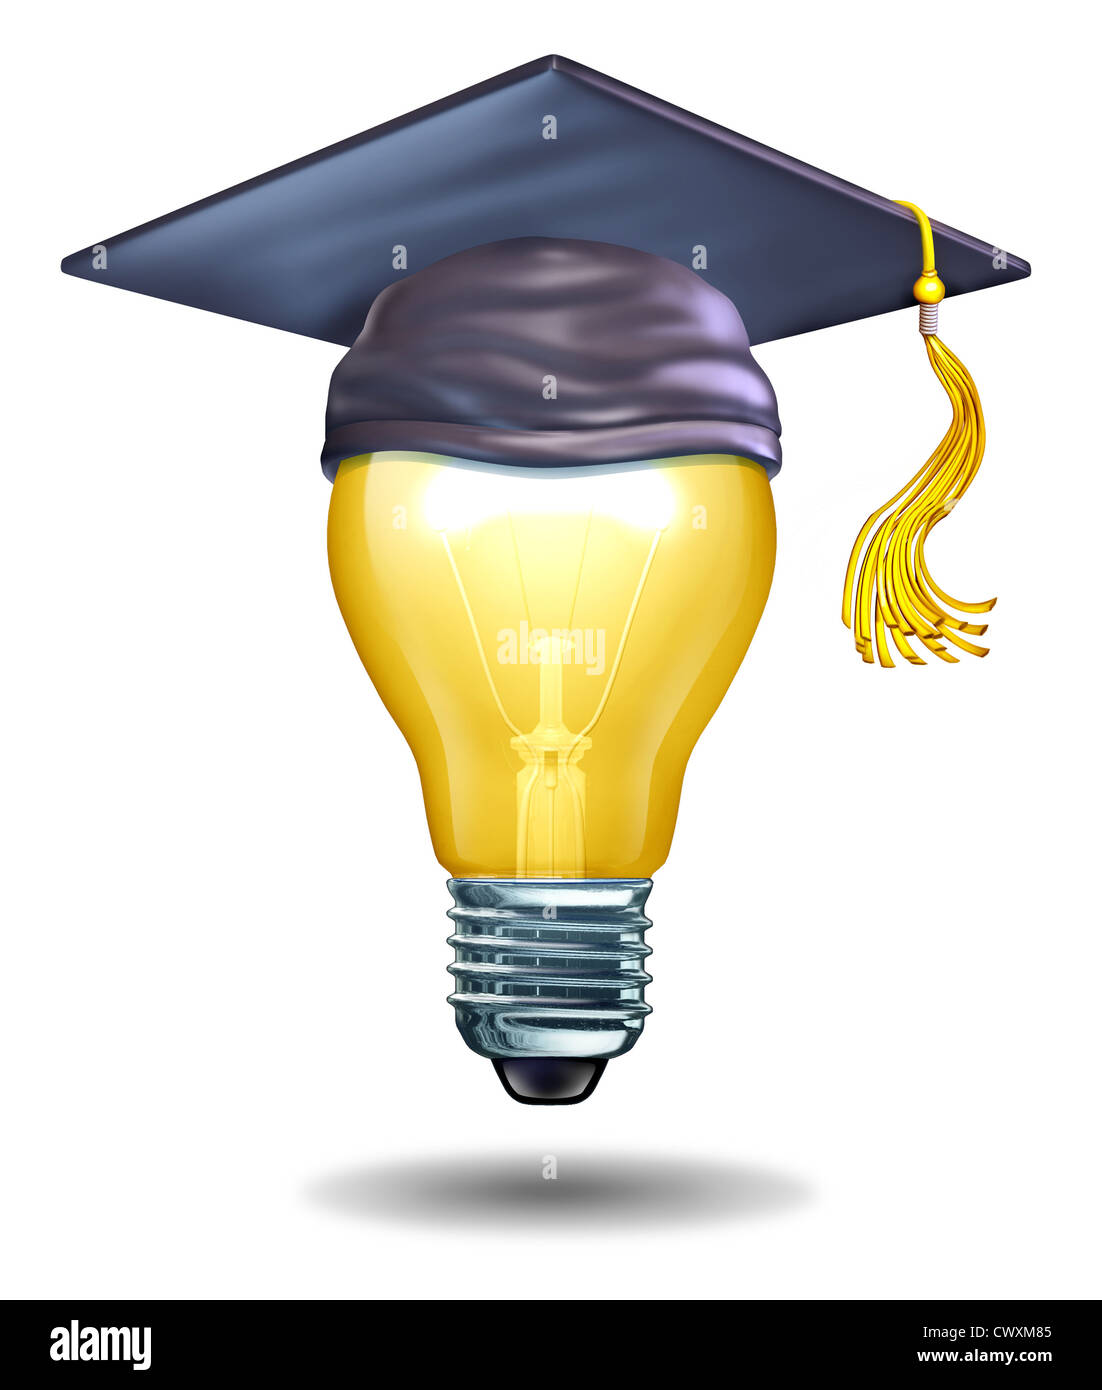 L'éducation créative concept avec une ampoule et un mortier cap ou graduation hat comme symboles d'écoles enseignant la créativité artistique ou prospective pour inspirer de nouvelles idées et l'innovation chez les étudiants. Banque D'Images